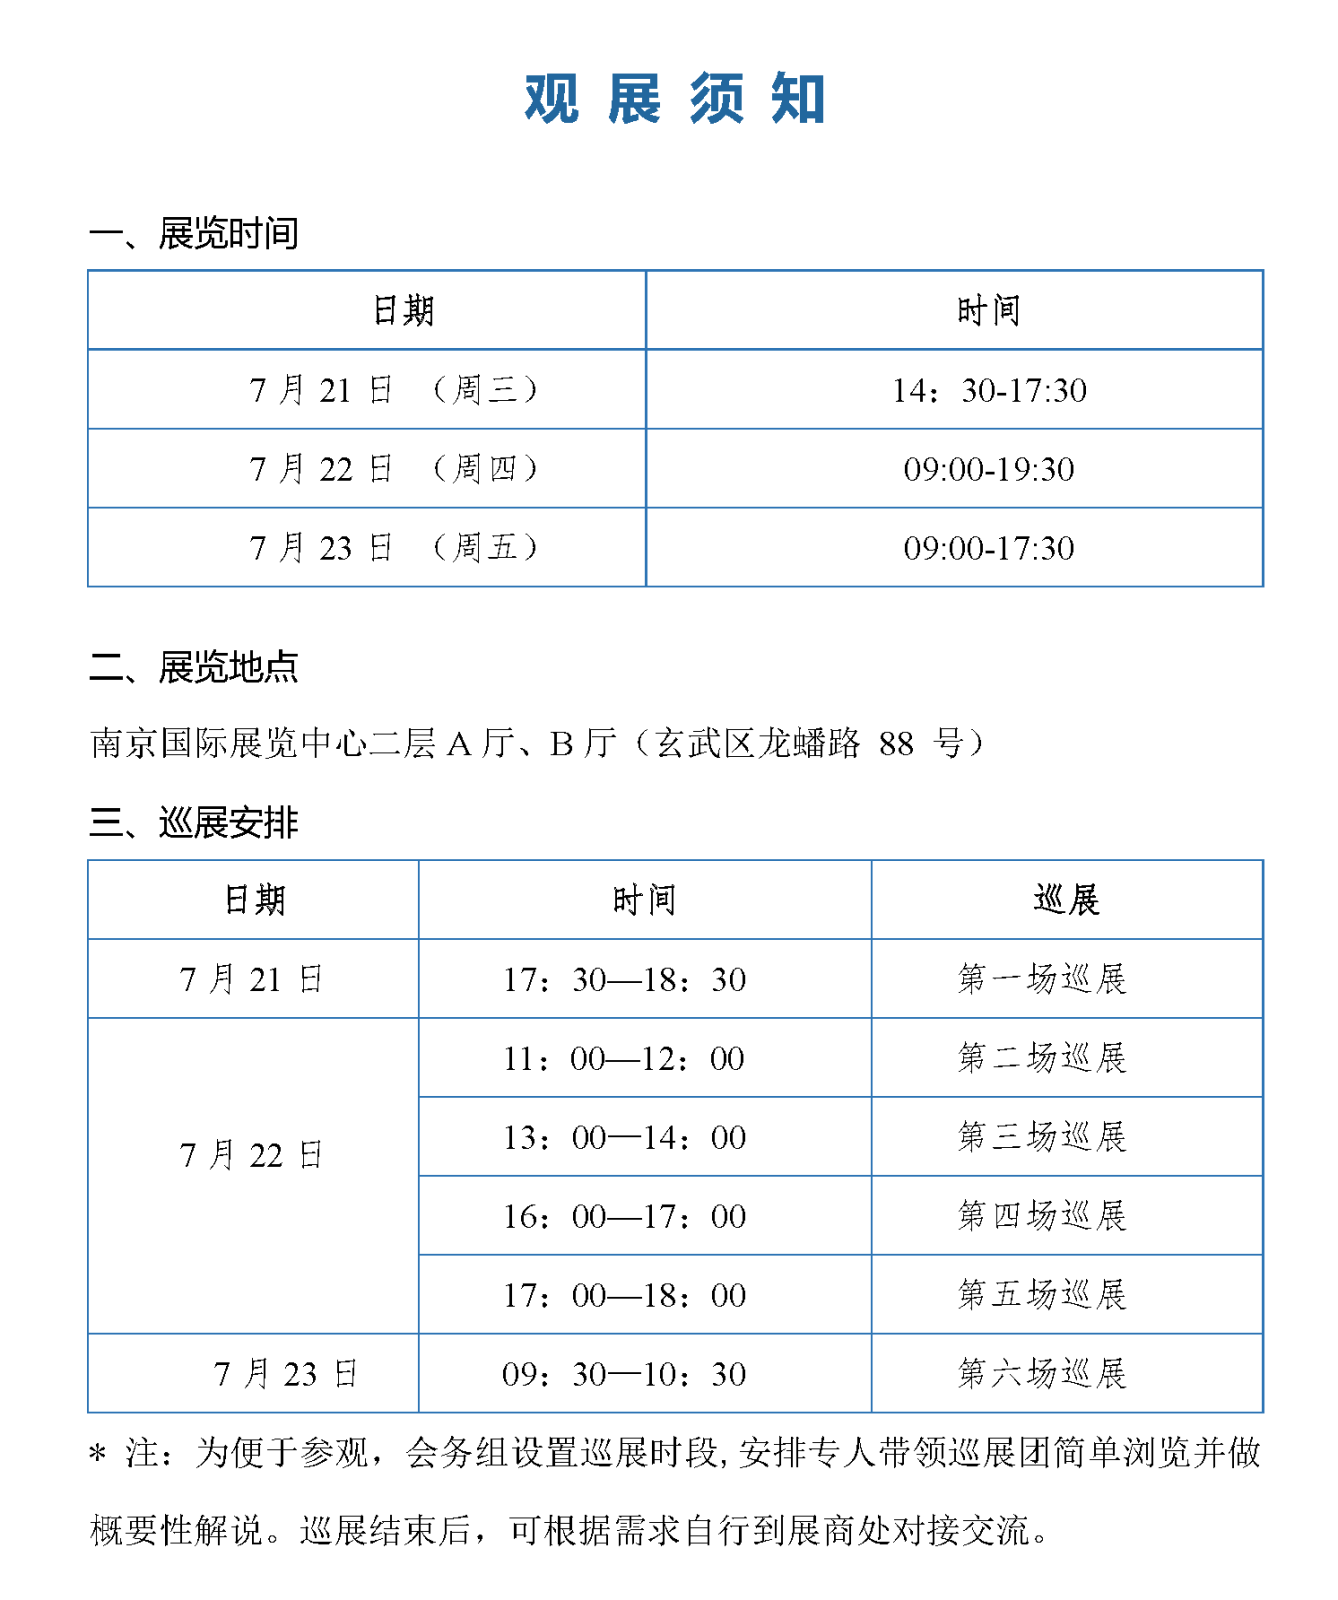 会议手册-2021中国石化行业采购大会_页面_18.png